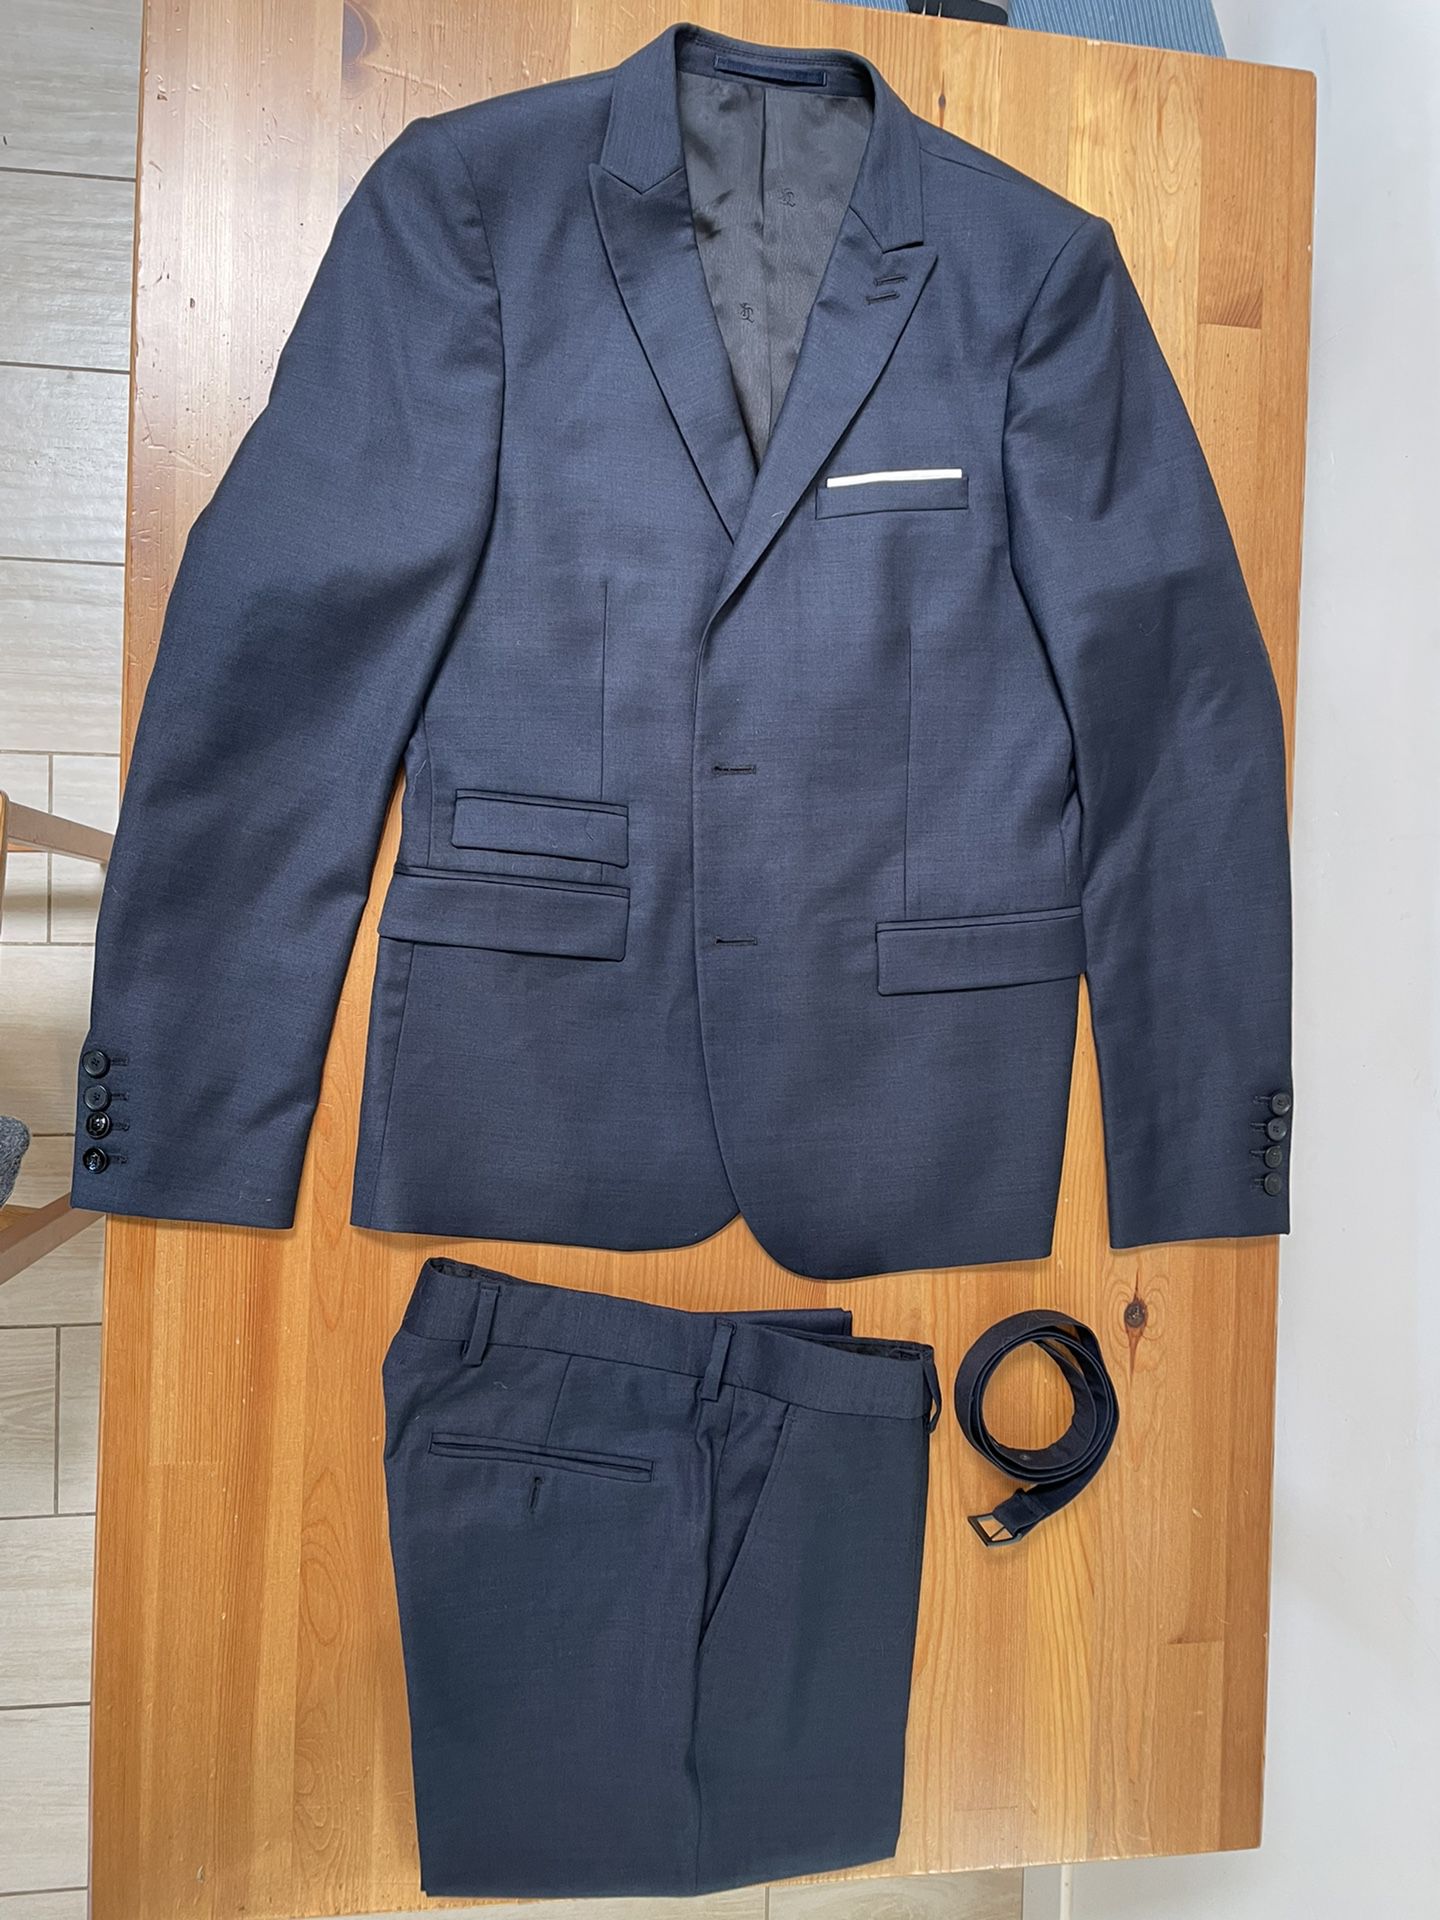 Navy Blue Suit (46 Jacket, 32x30 Pants) 